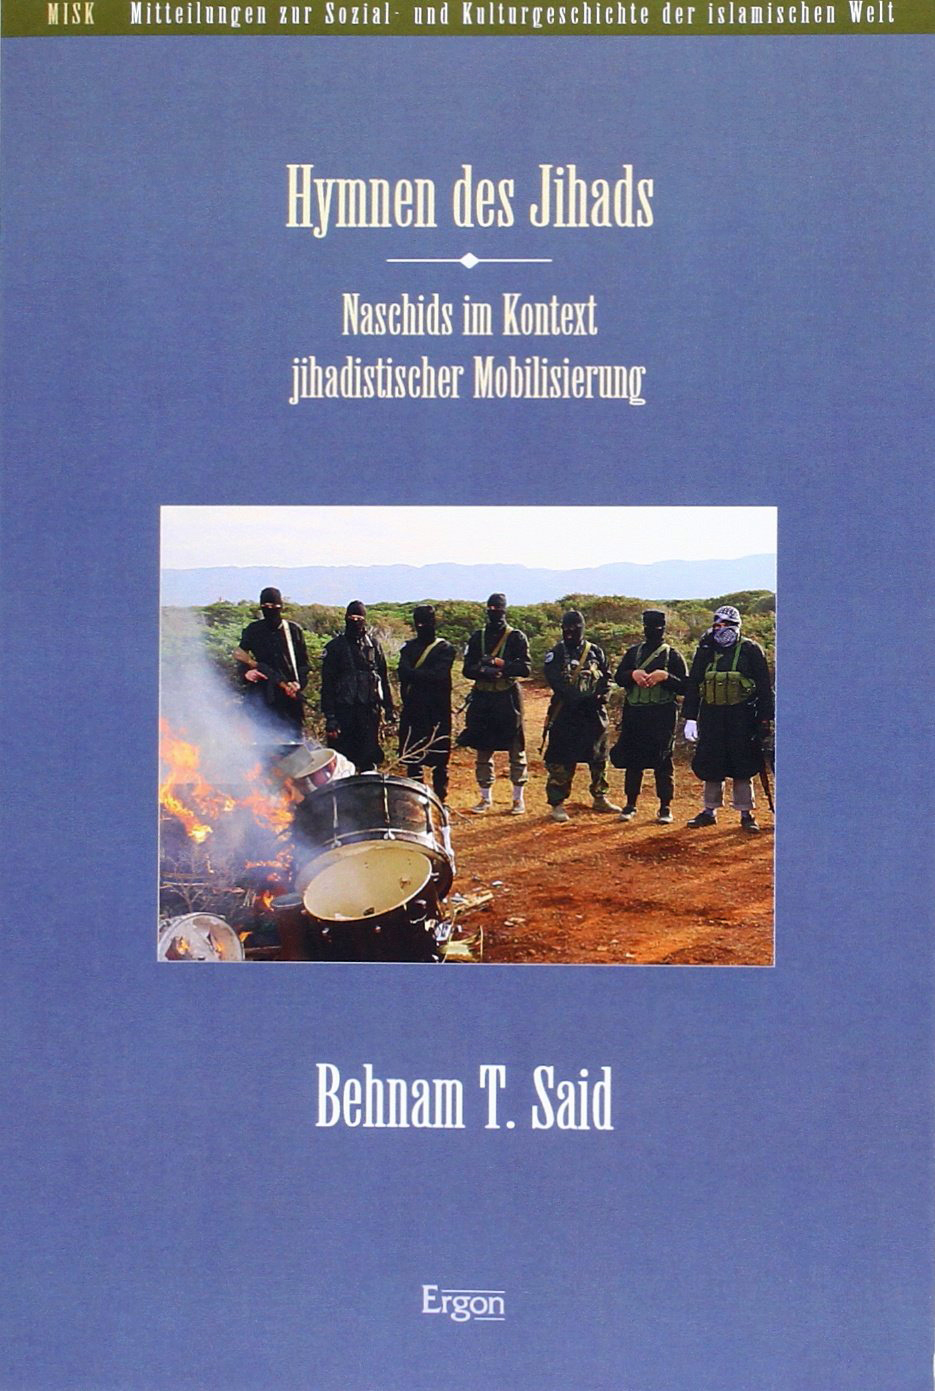  BEHNAM T. SAID:: Hymnen des Jihads : Naschids im Kontext jihadistischer Mobilisierung.  